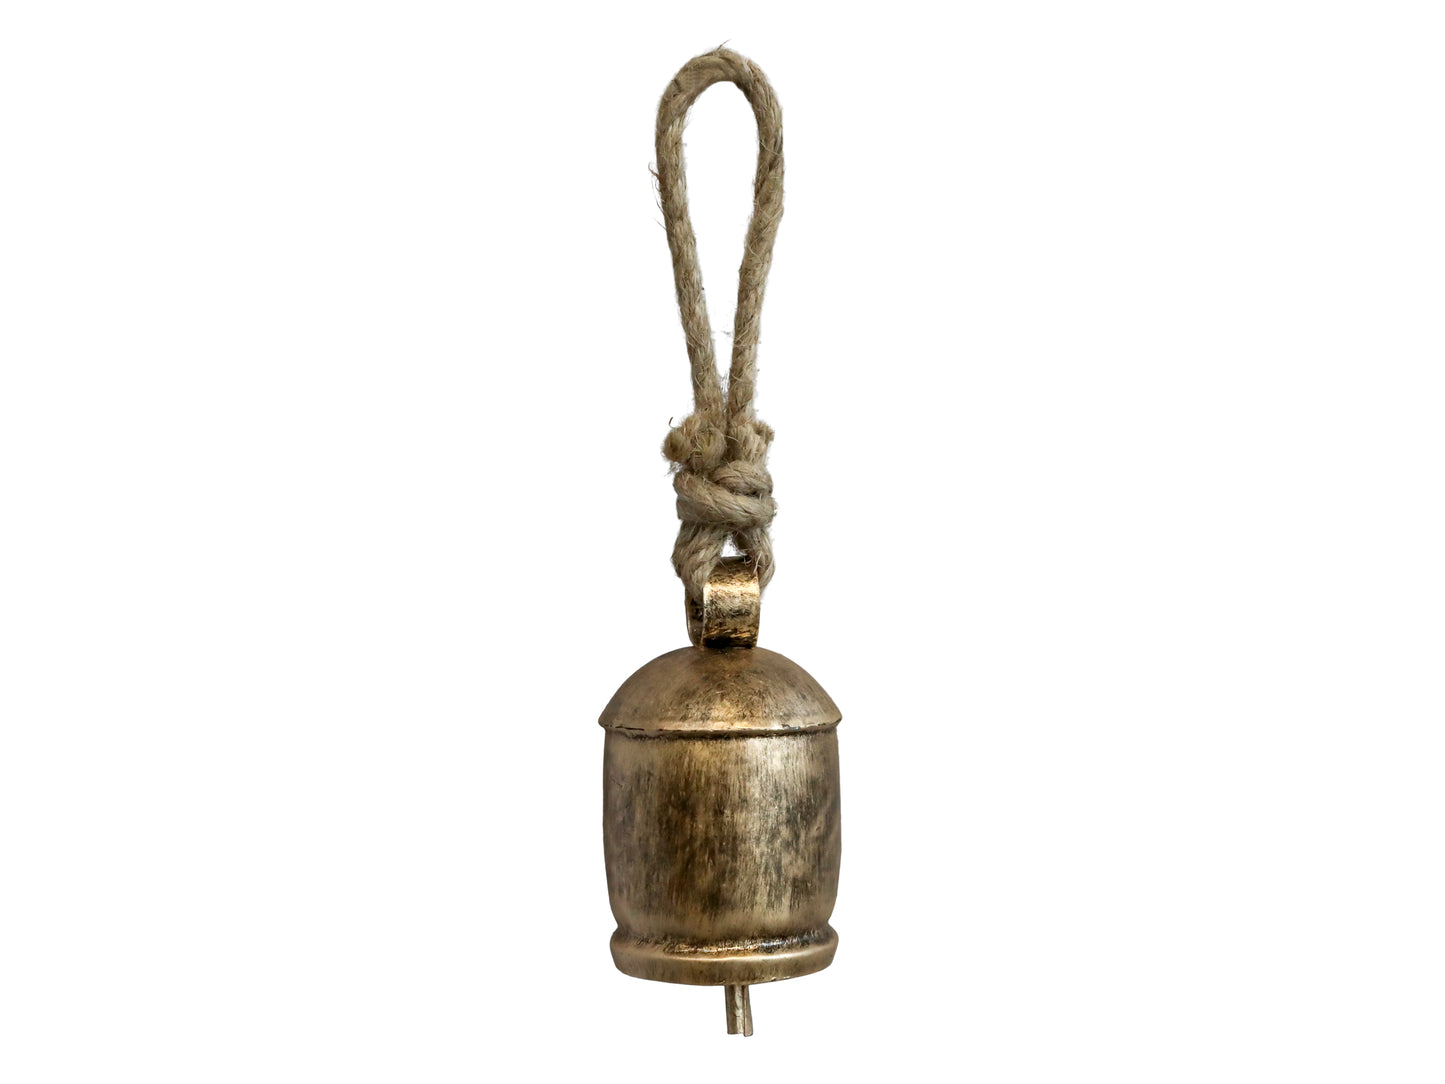 Antique Brass Bell 